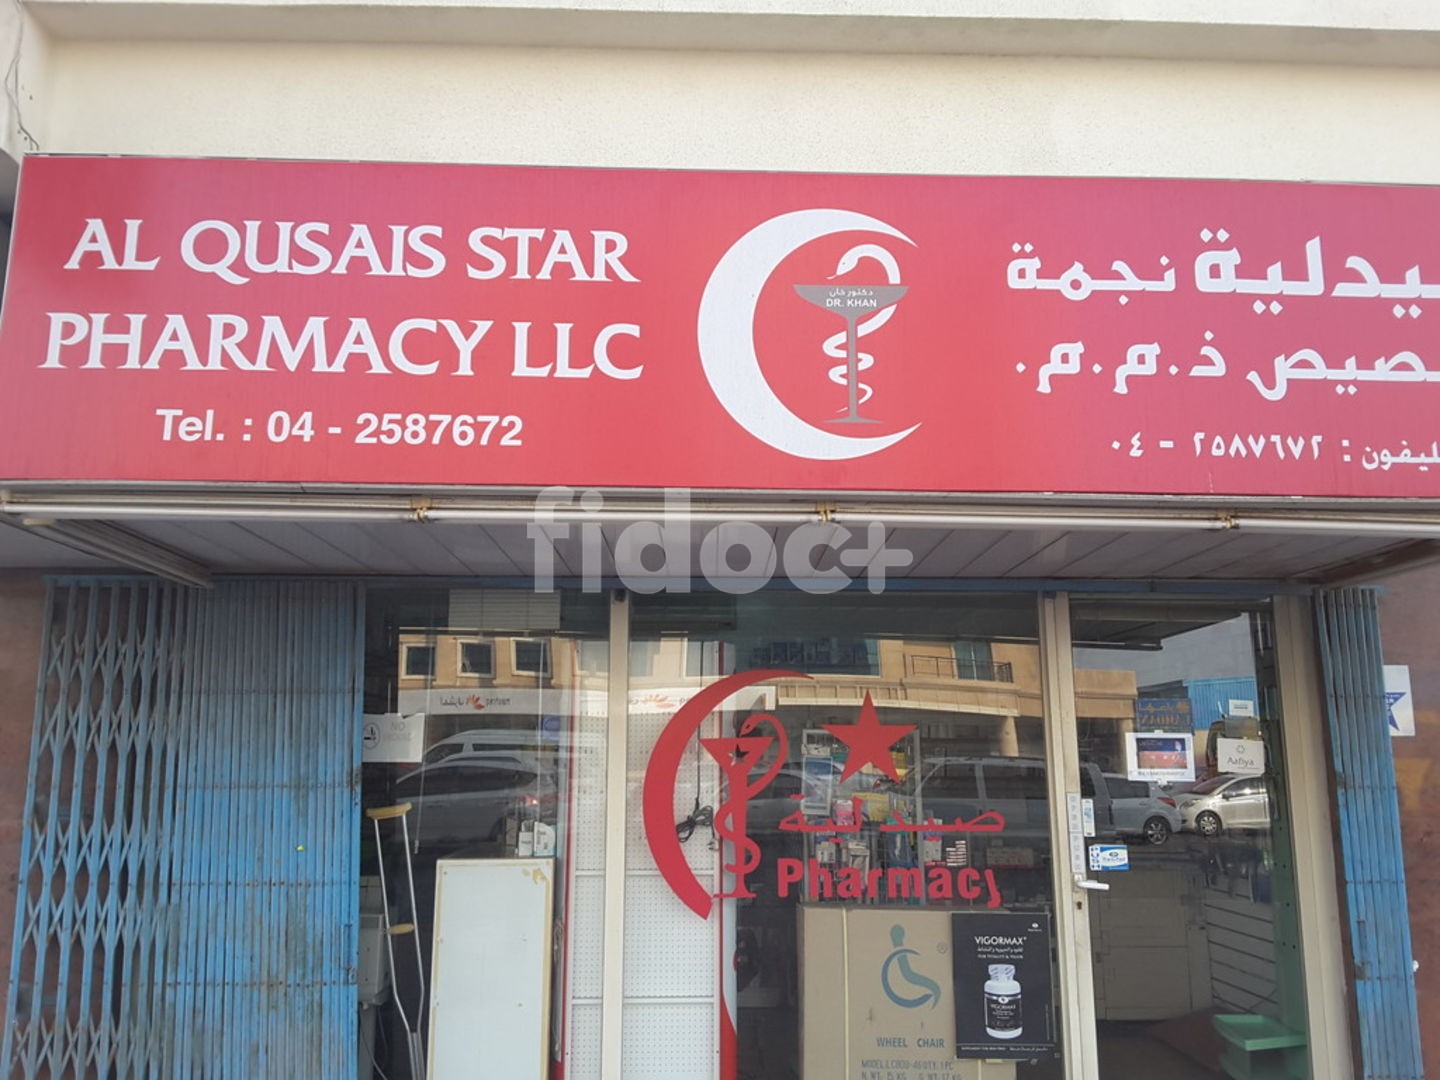 Al Qusais Star Pharmacy, Dubai